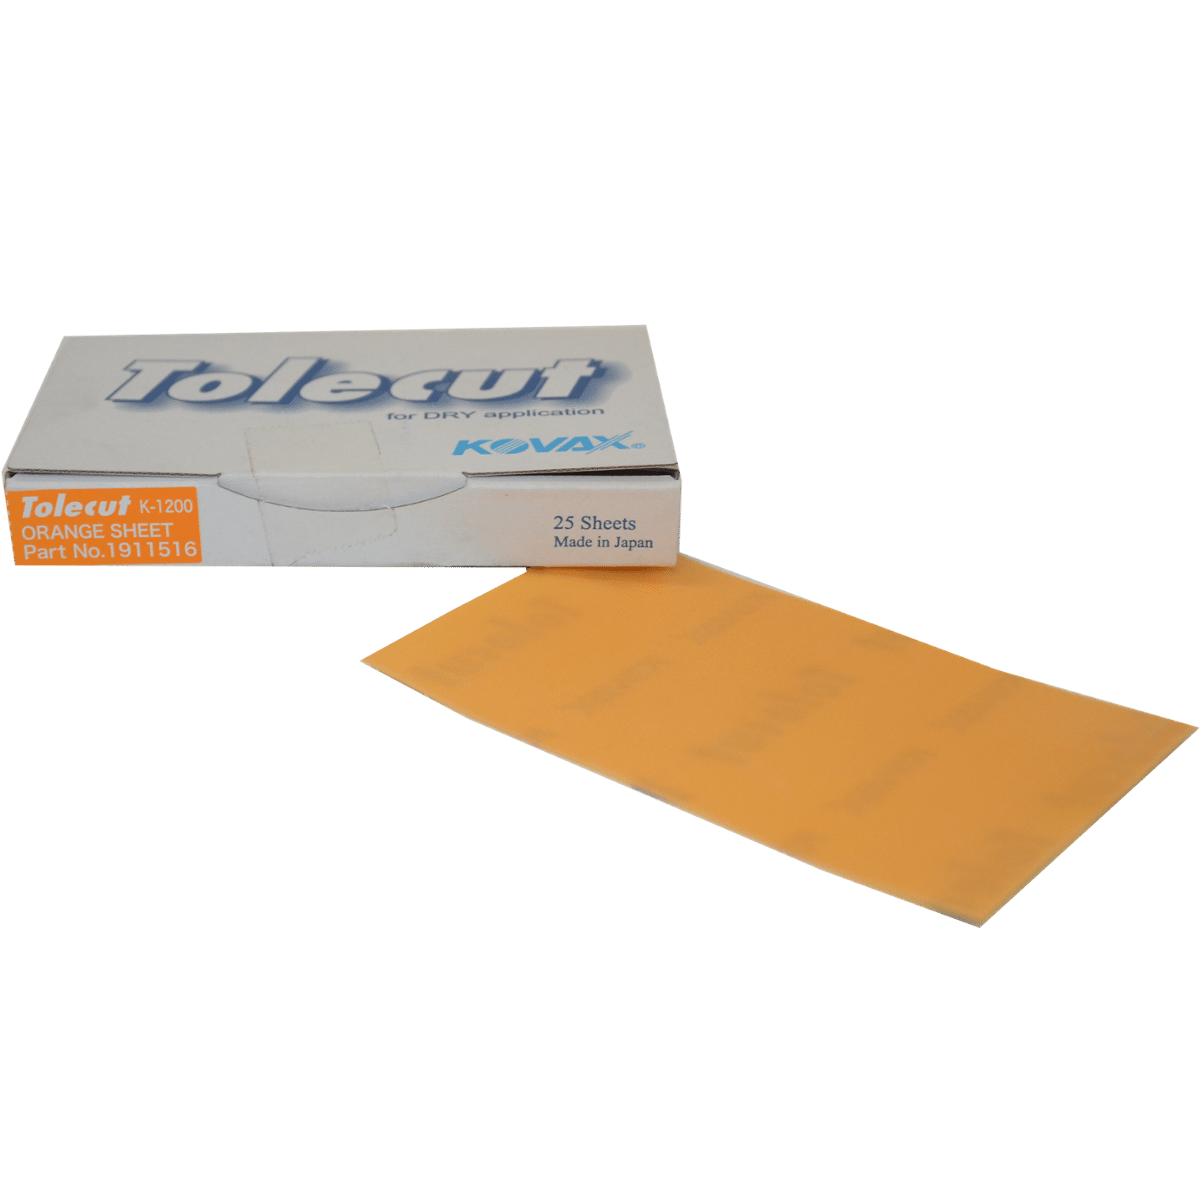 KOVAX Tolecut Orange 70x114mm K1200 Papier Ścierny do Pracy na Sucho